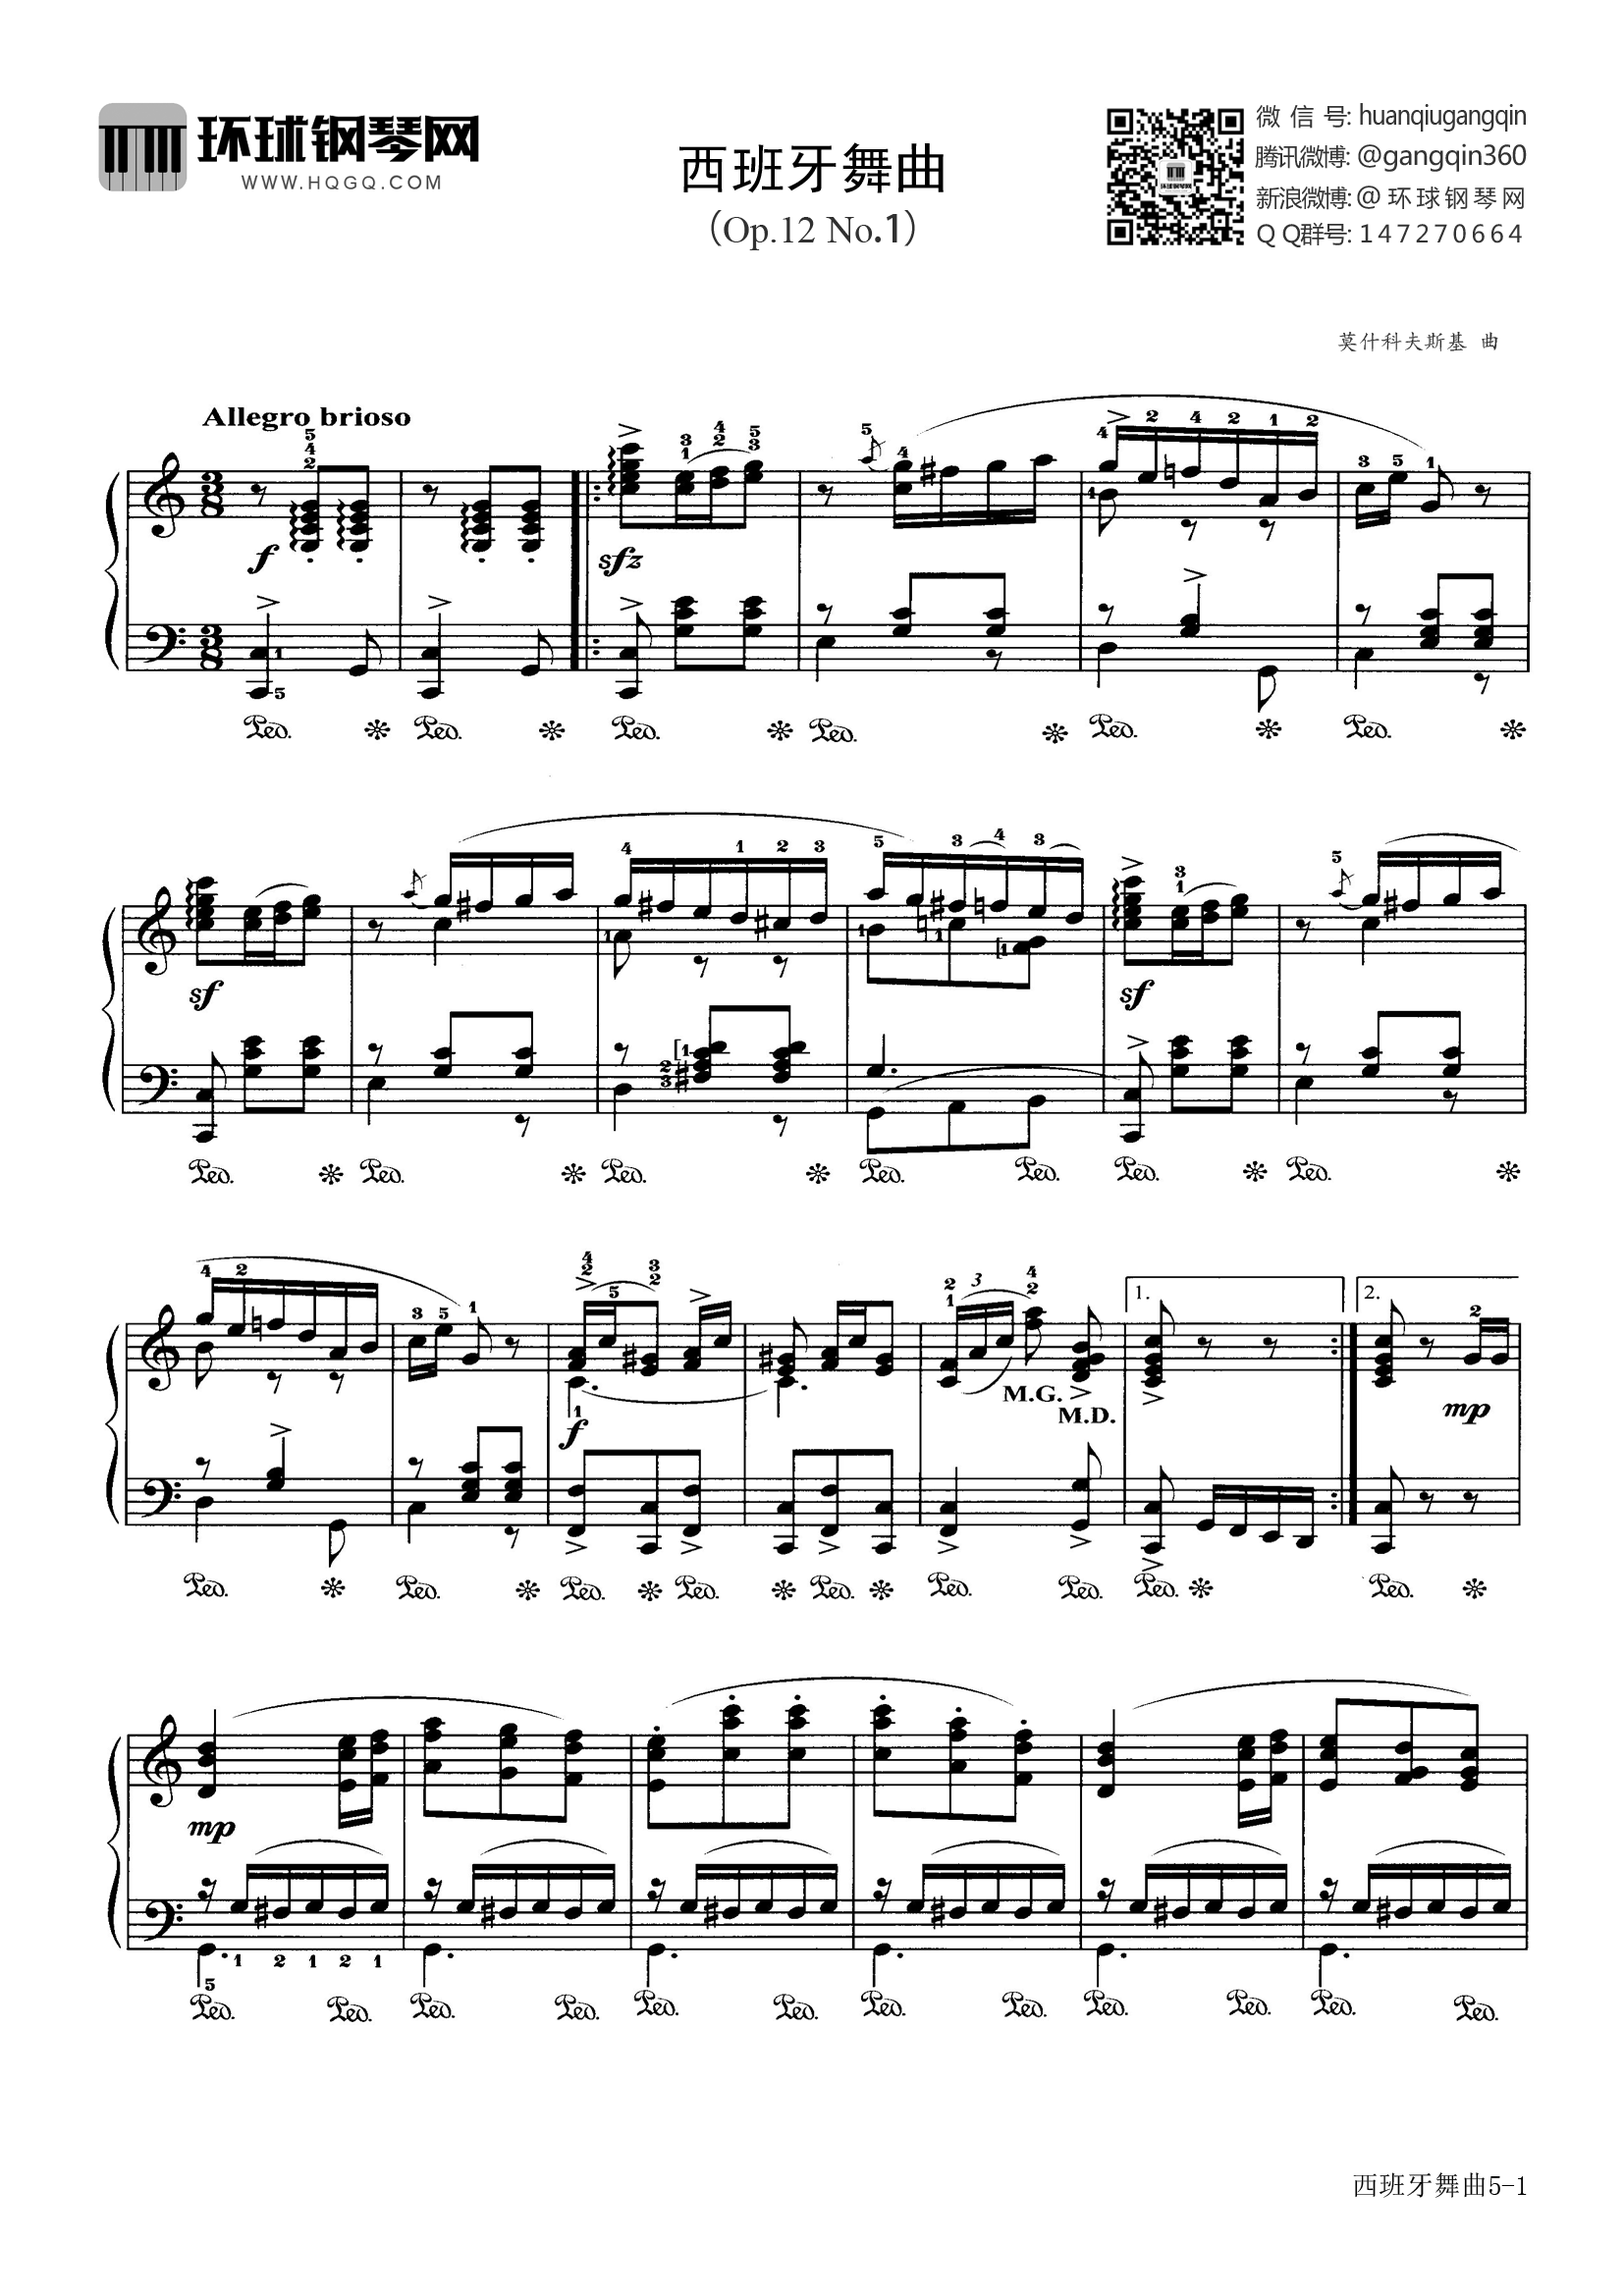 钢琴谱 西班牙舞曲(选自《中外钢琴独奏小品精选4》)  曲谱西班牙舞曲